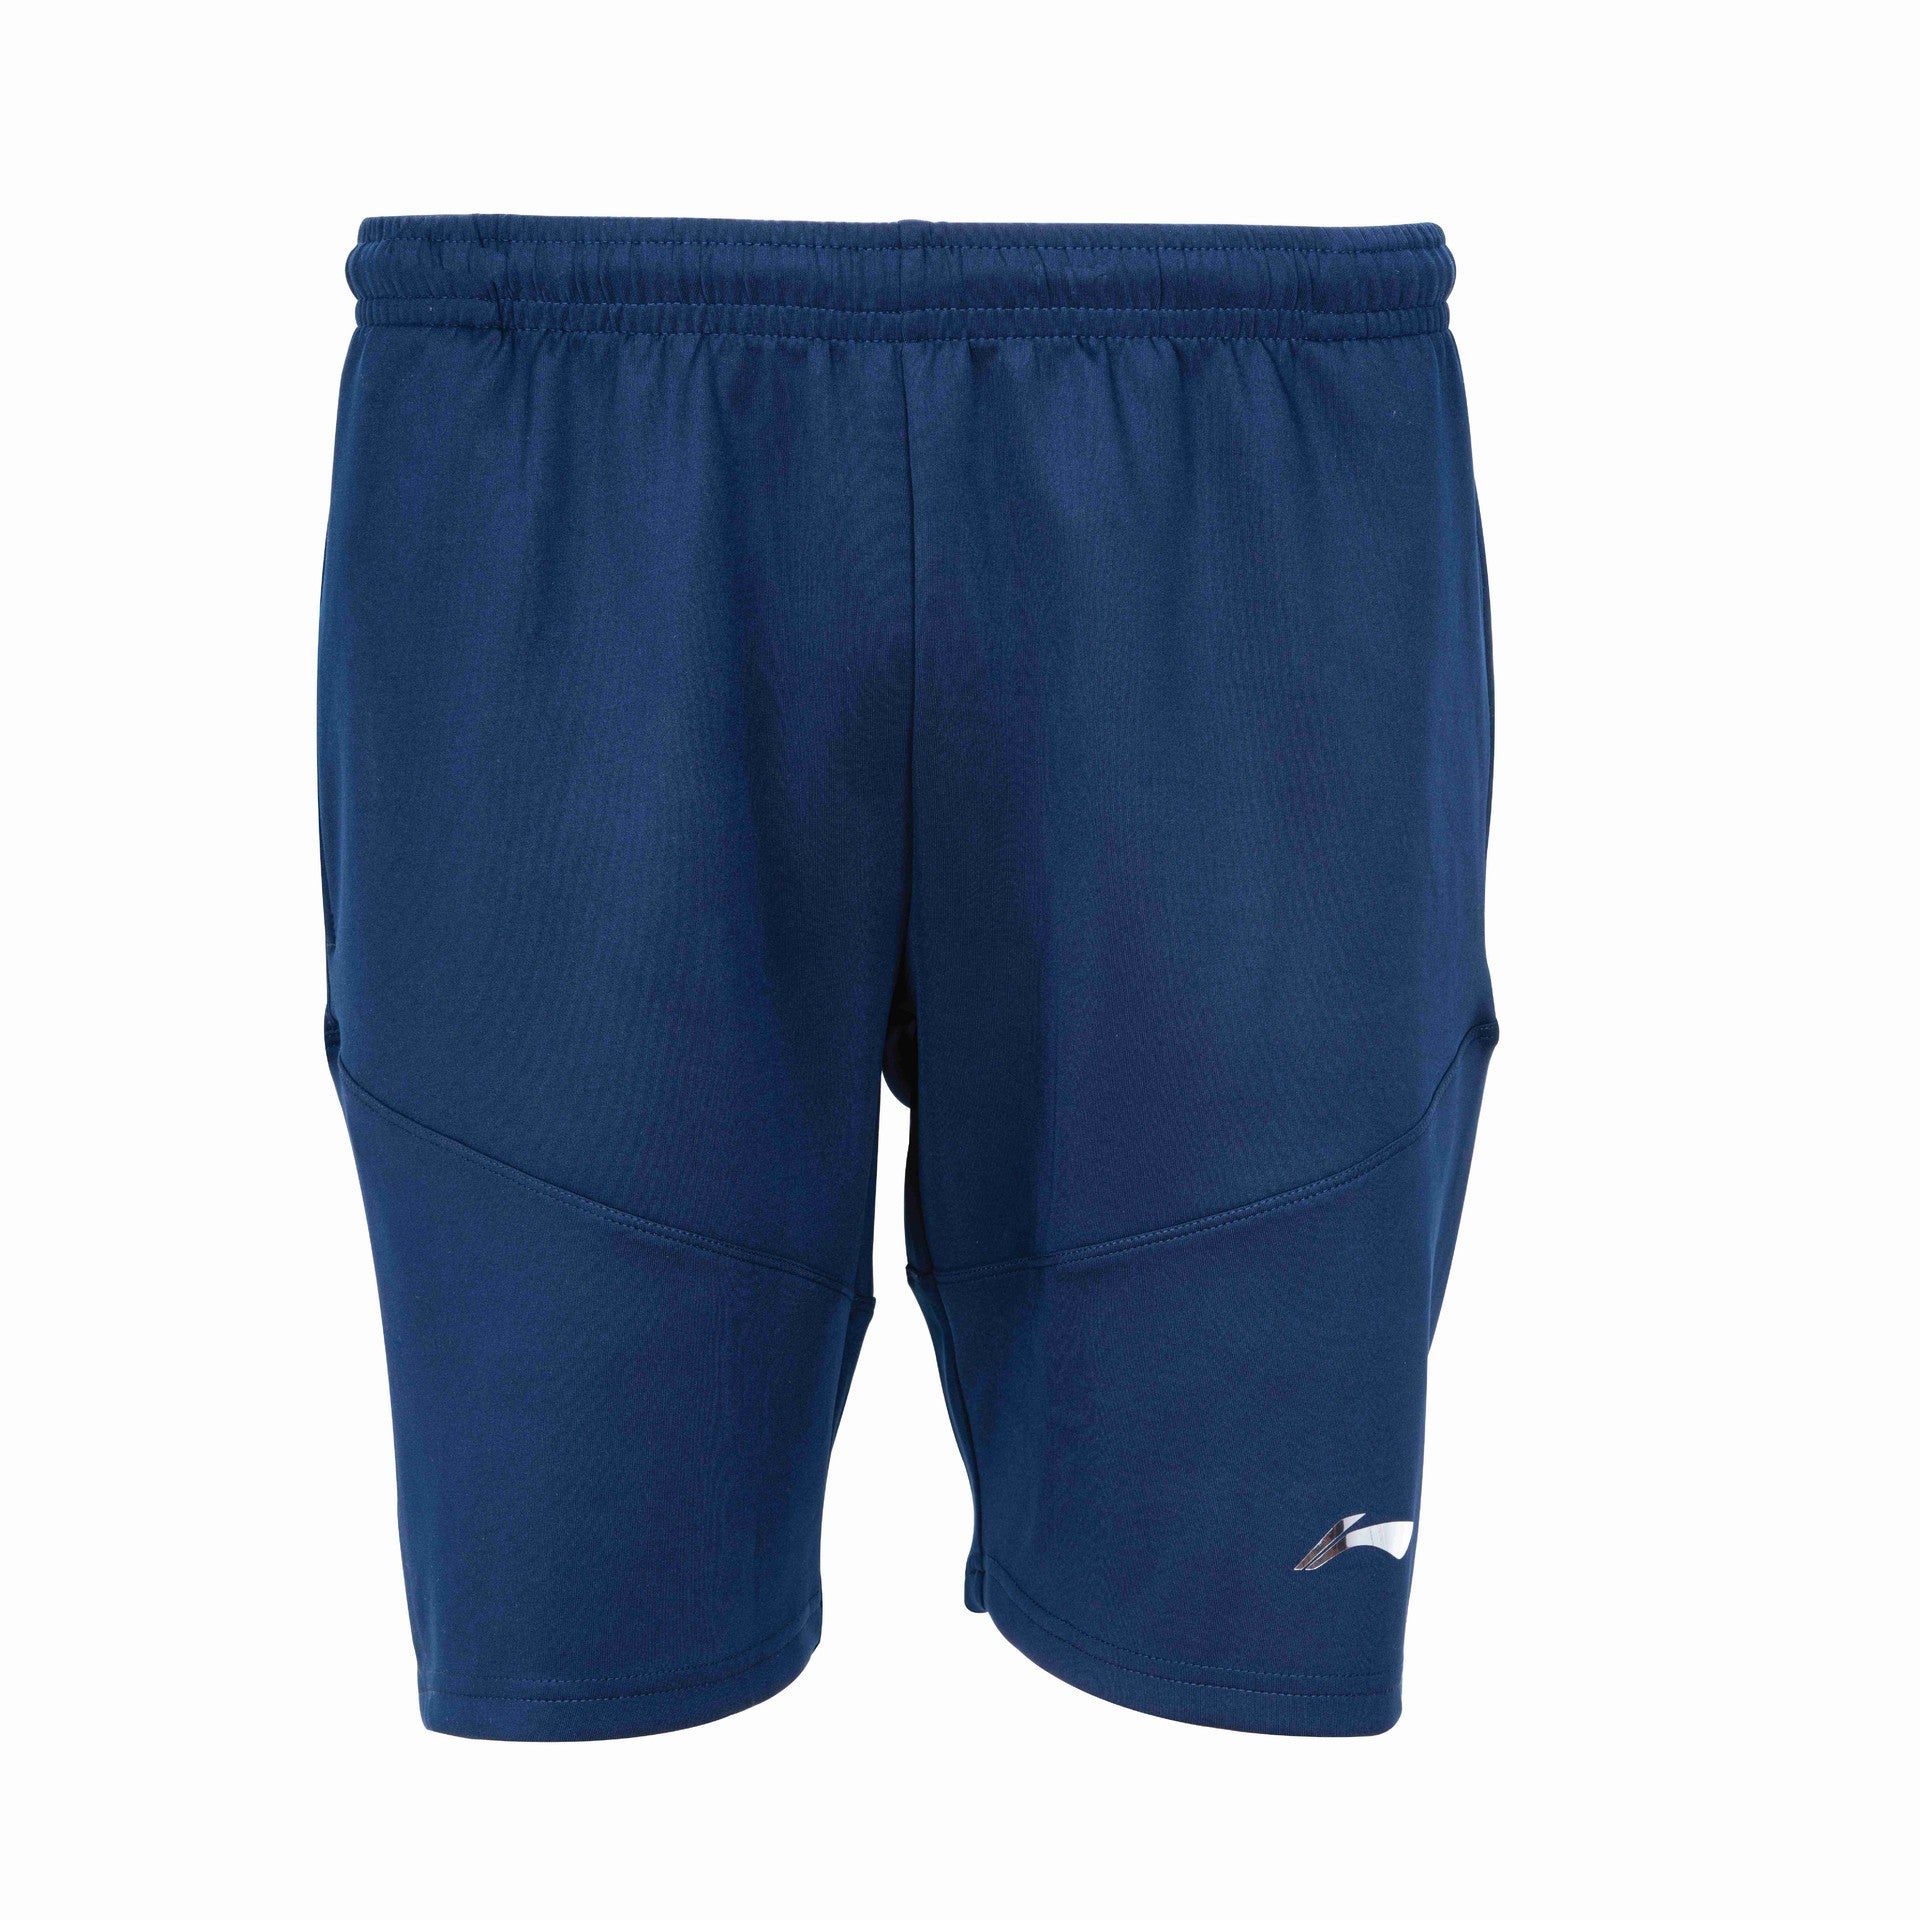 Li-Ning Men's Dazzler Shorts Medium (Navy Blue)